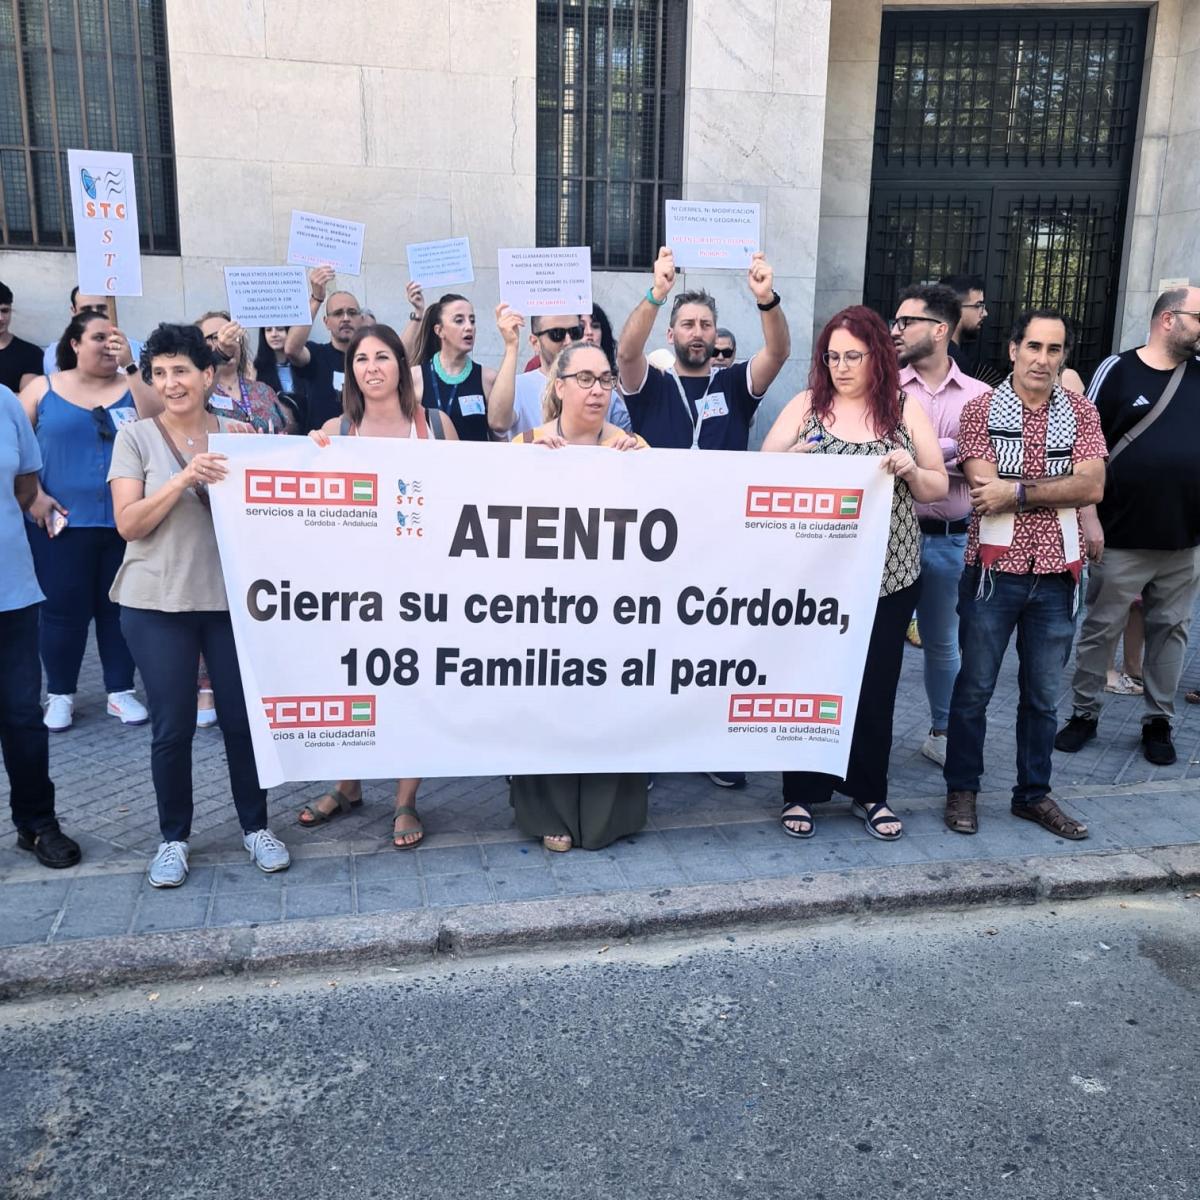 La plantilla de Atento ha vuelto a protestar contra la propuesta de cierre del centro.